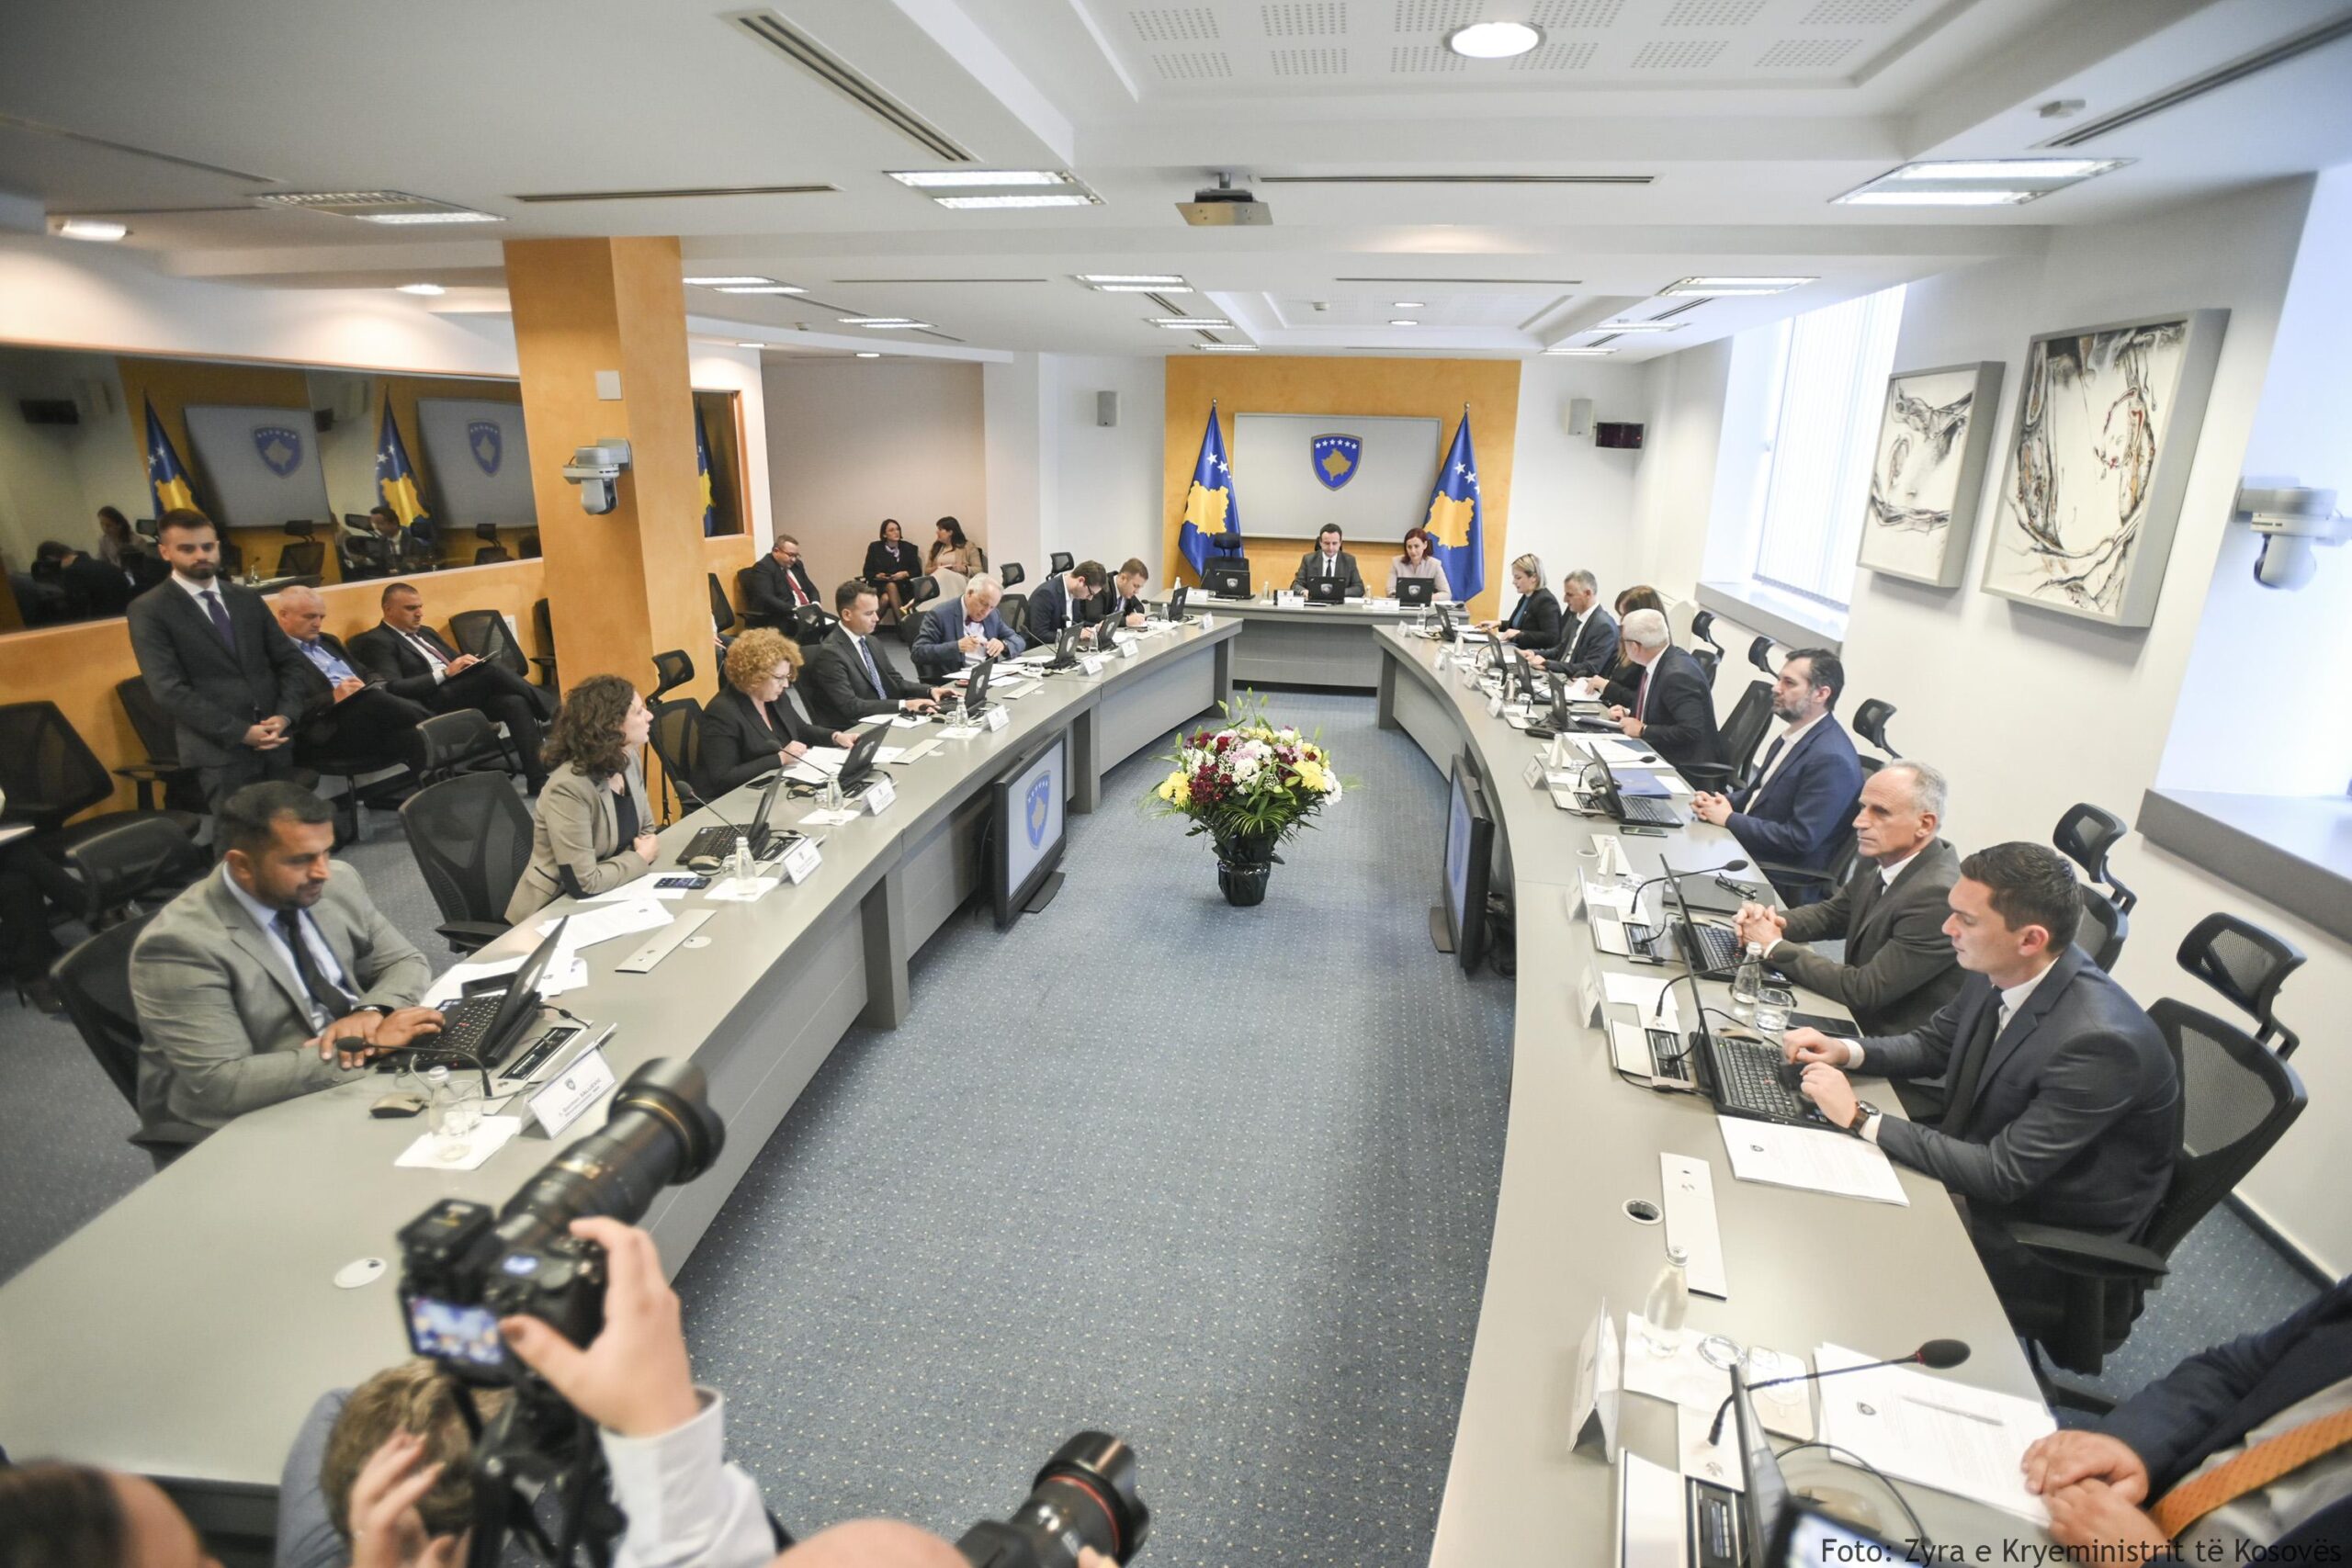 Të gjitha vendimet që u morën në mbledhjen e djeshme të Qeverisë së Kosovës